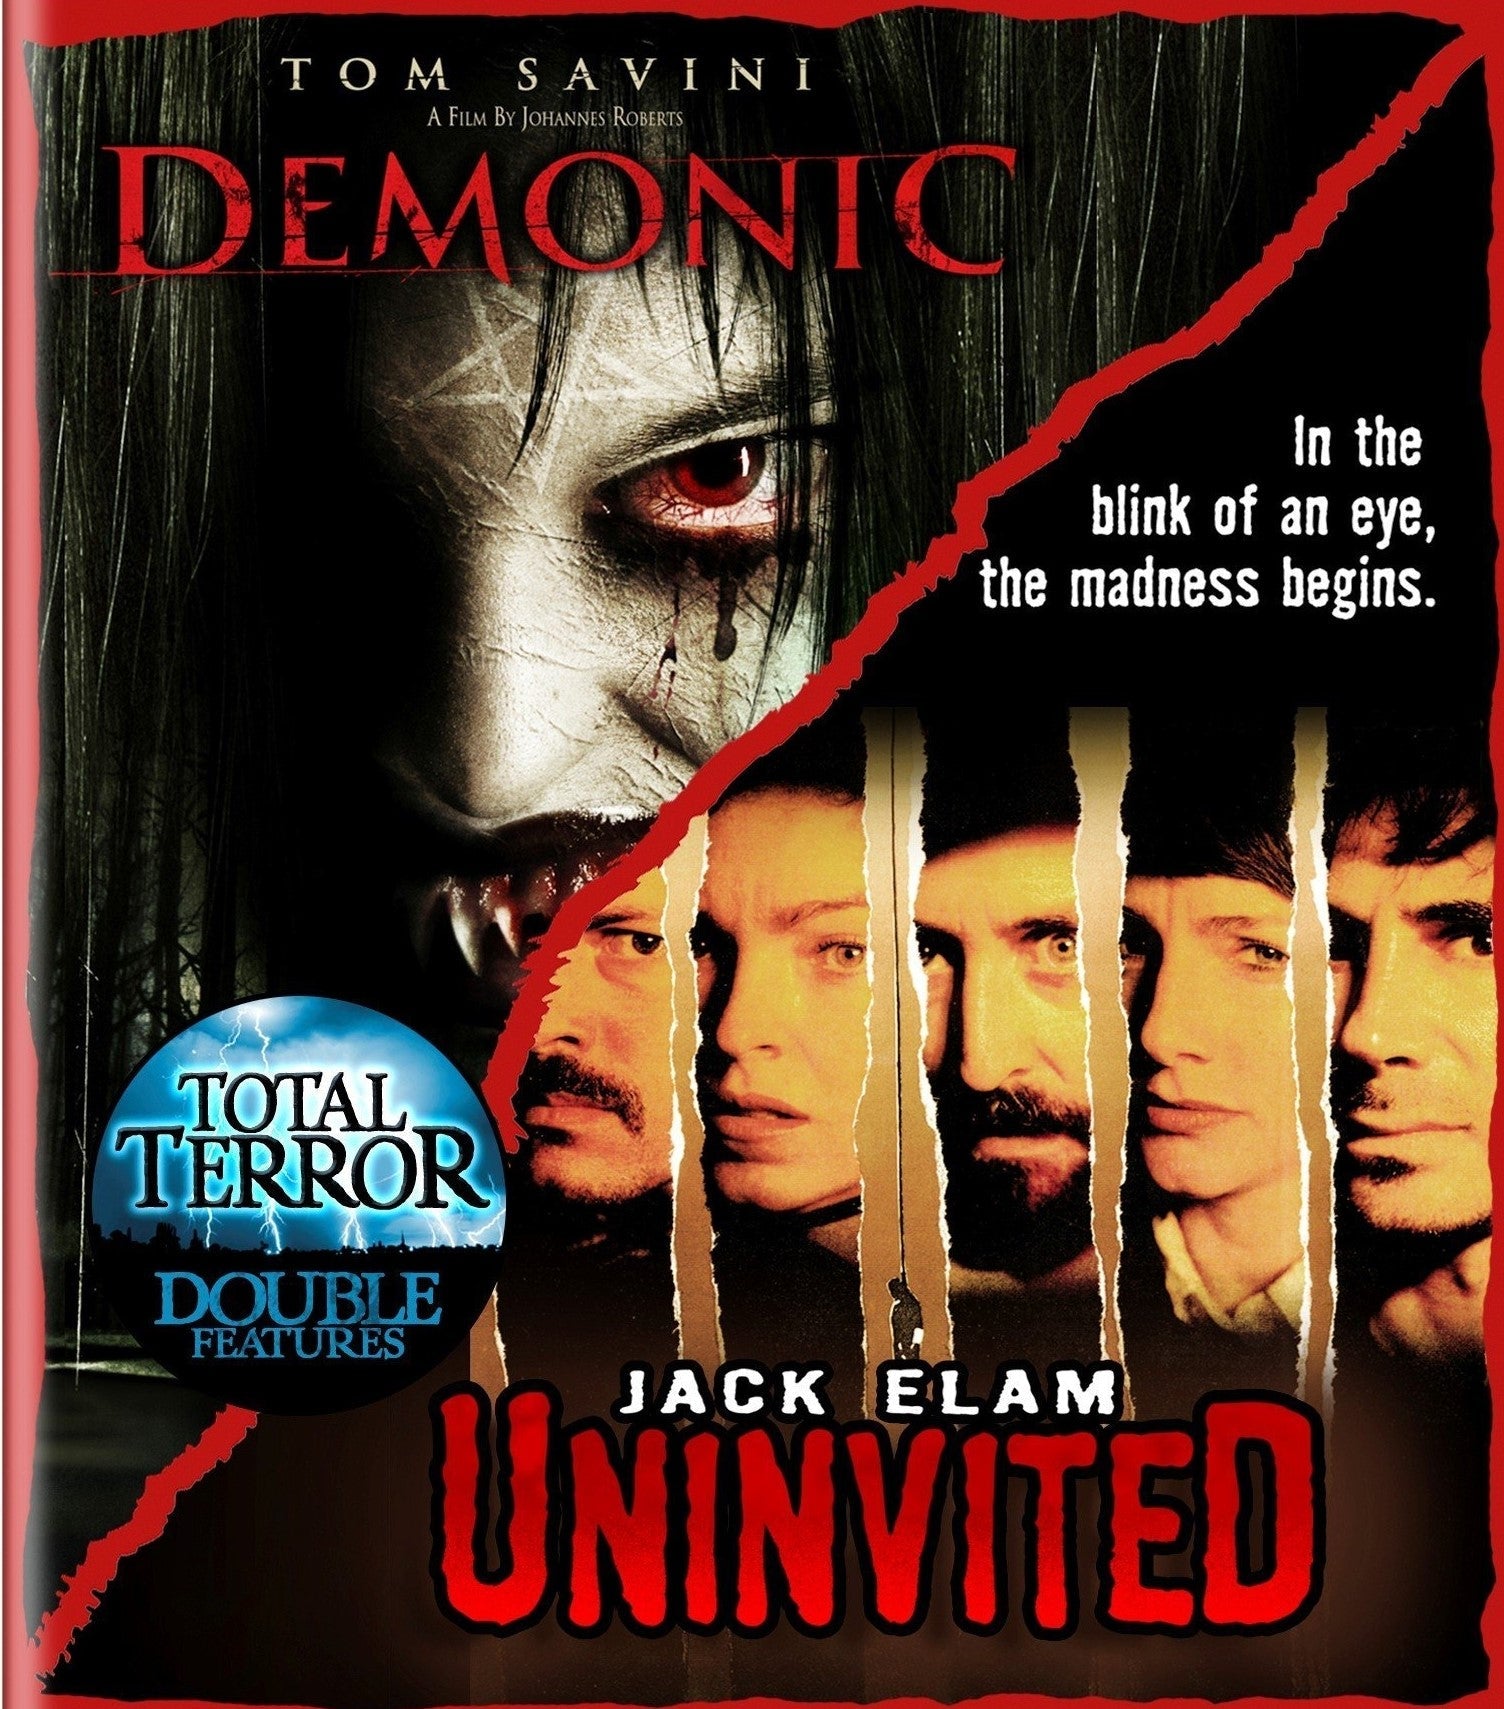 Demonic / Uninvited Blu-Ray Blu-Ray